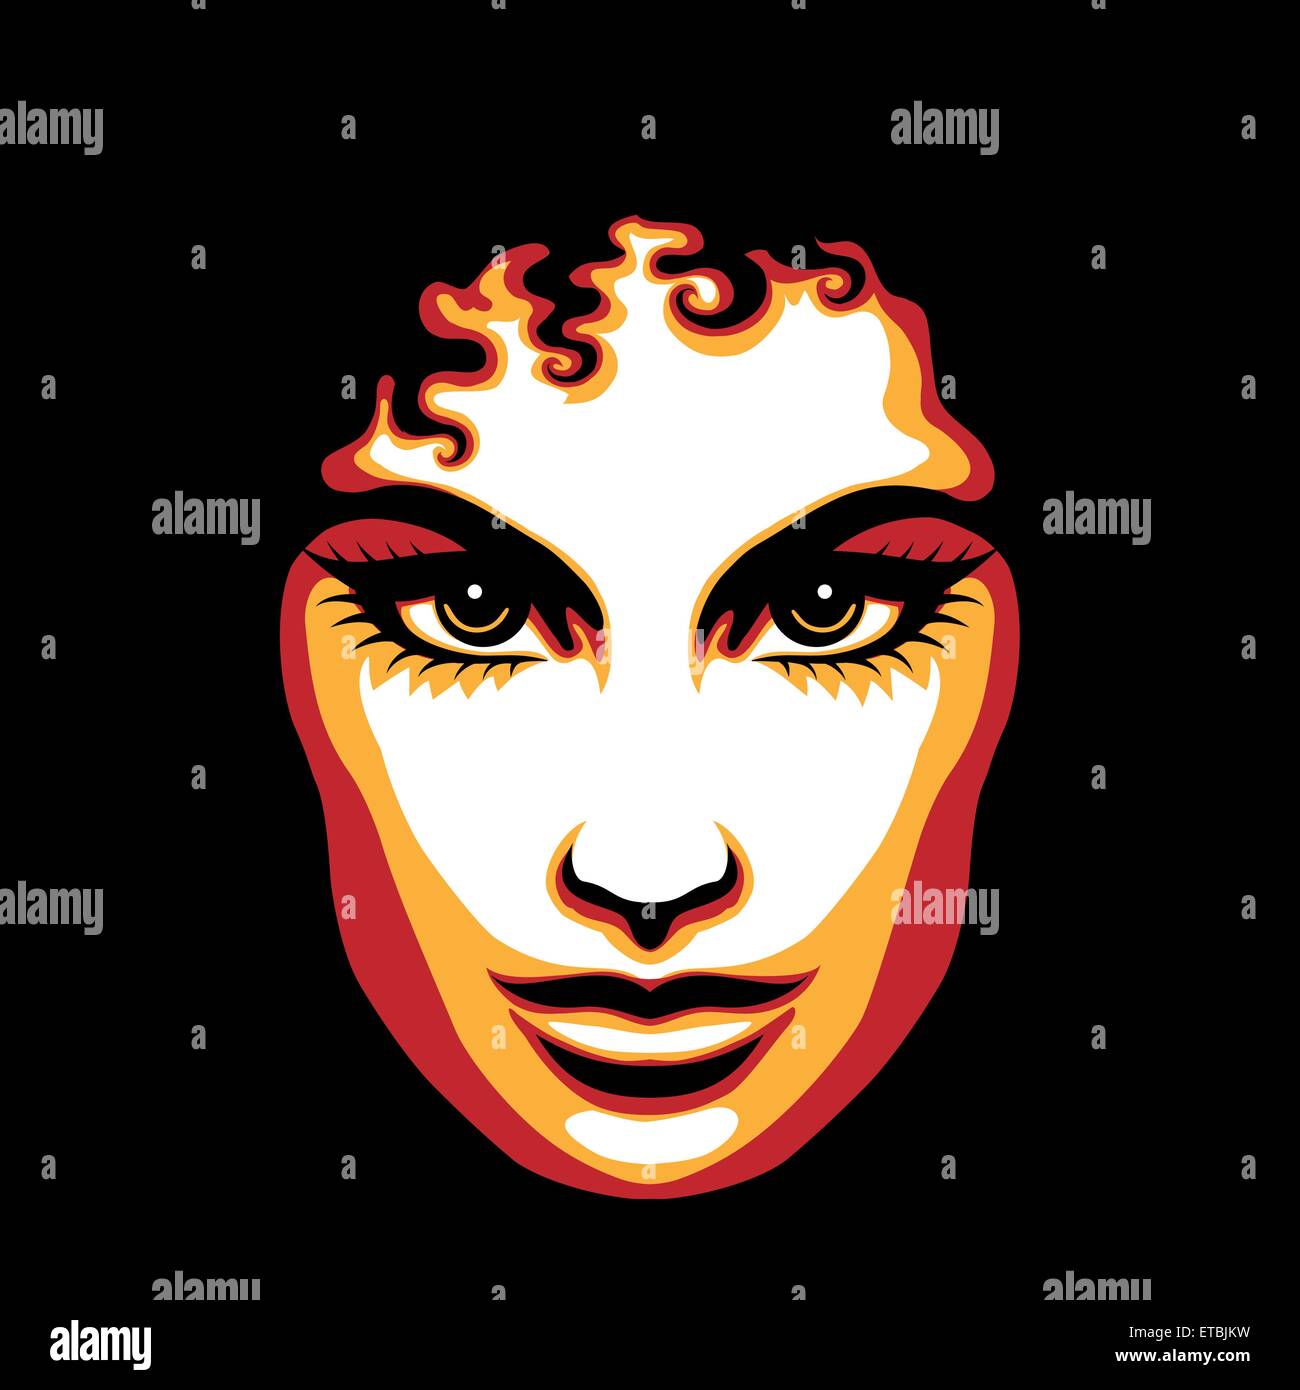 Gesicht der Frau im Retro-Plakat-Stil gezeichnet. Keine Farbverläufe verwendet. Stock Vektor